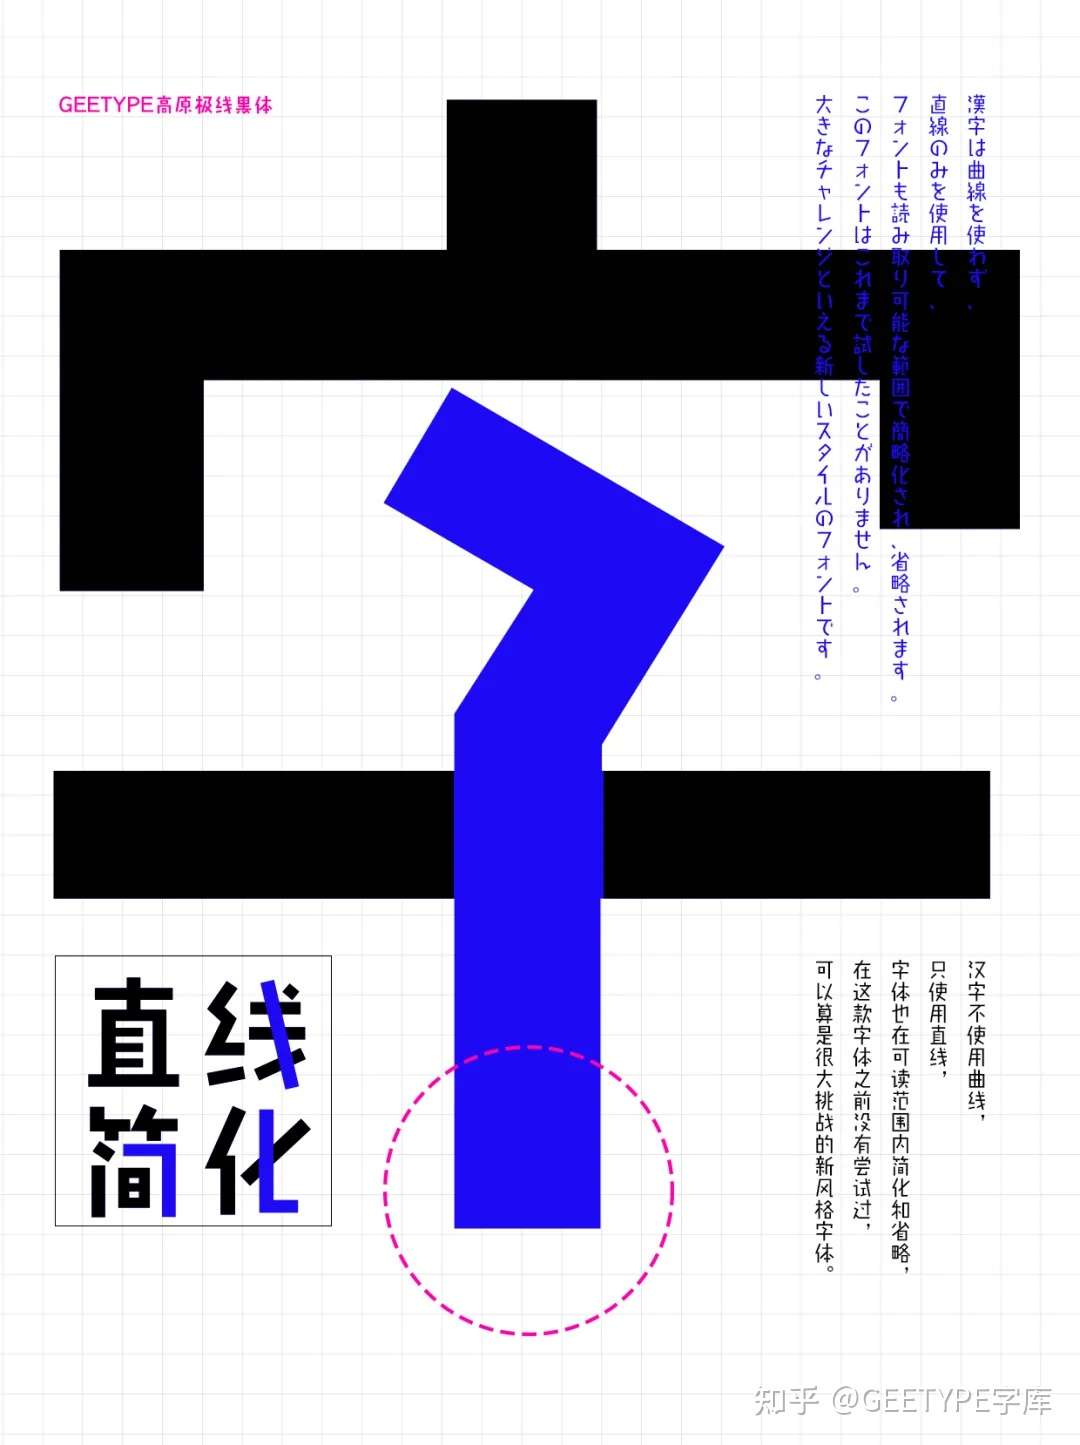 不可思议的脑洞字体 在日本流行多年 Geetype高原极线黑体 中日双语版上线 知乎